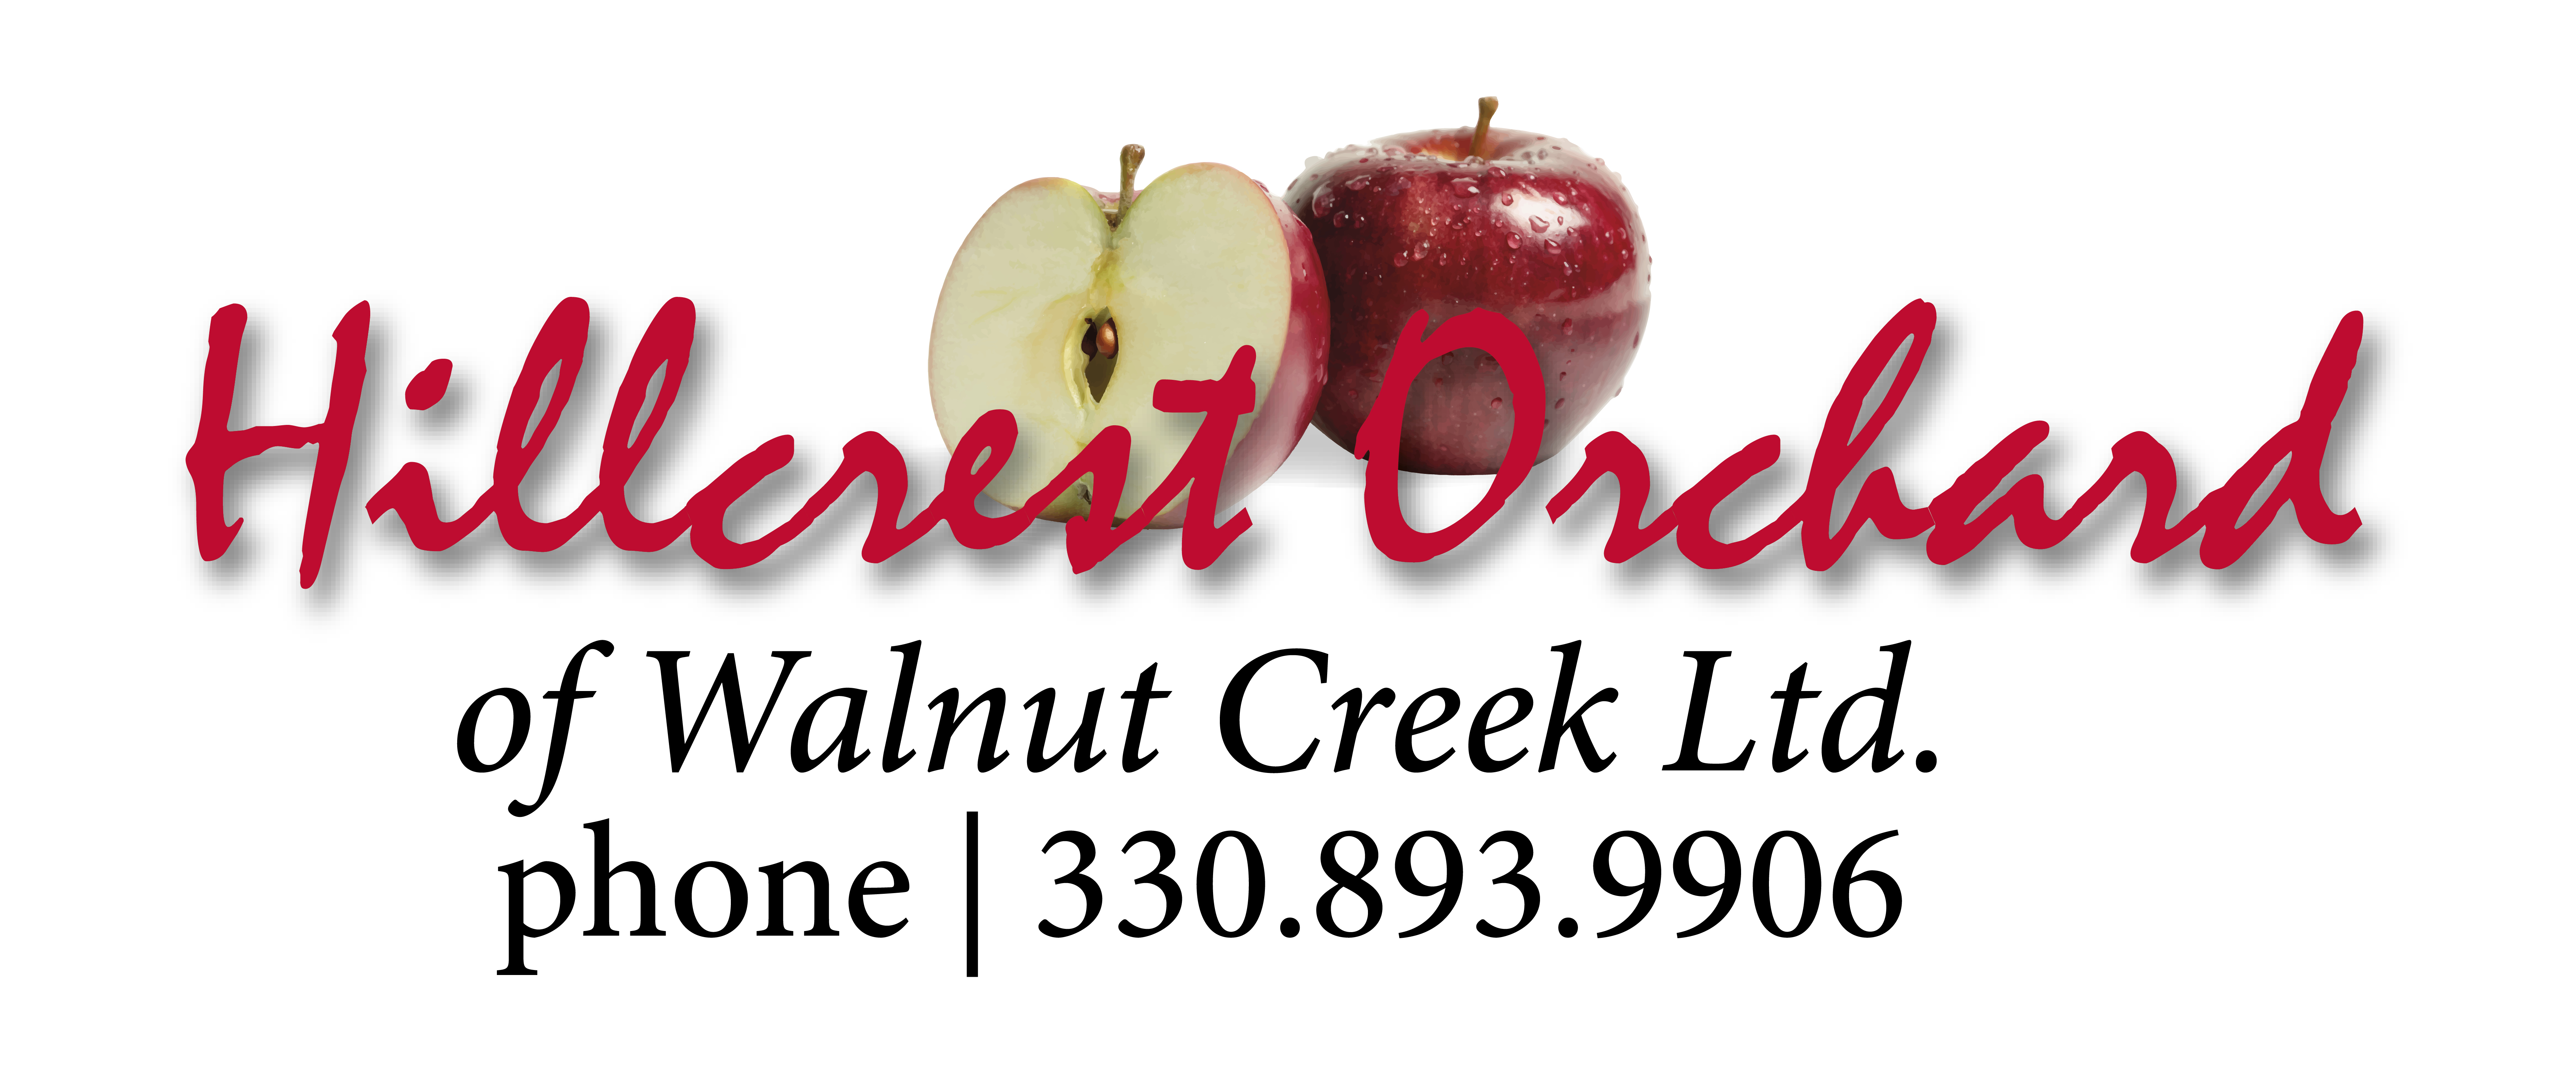 Hillcrest Orchard Logo